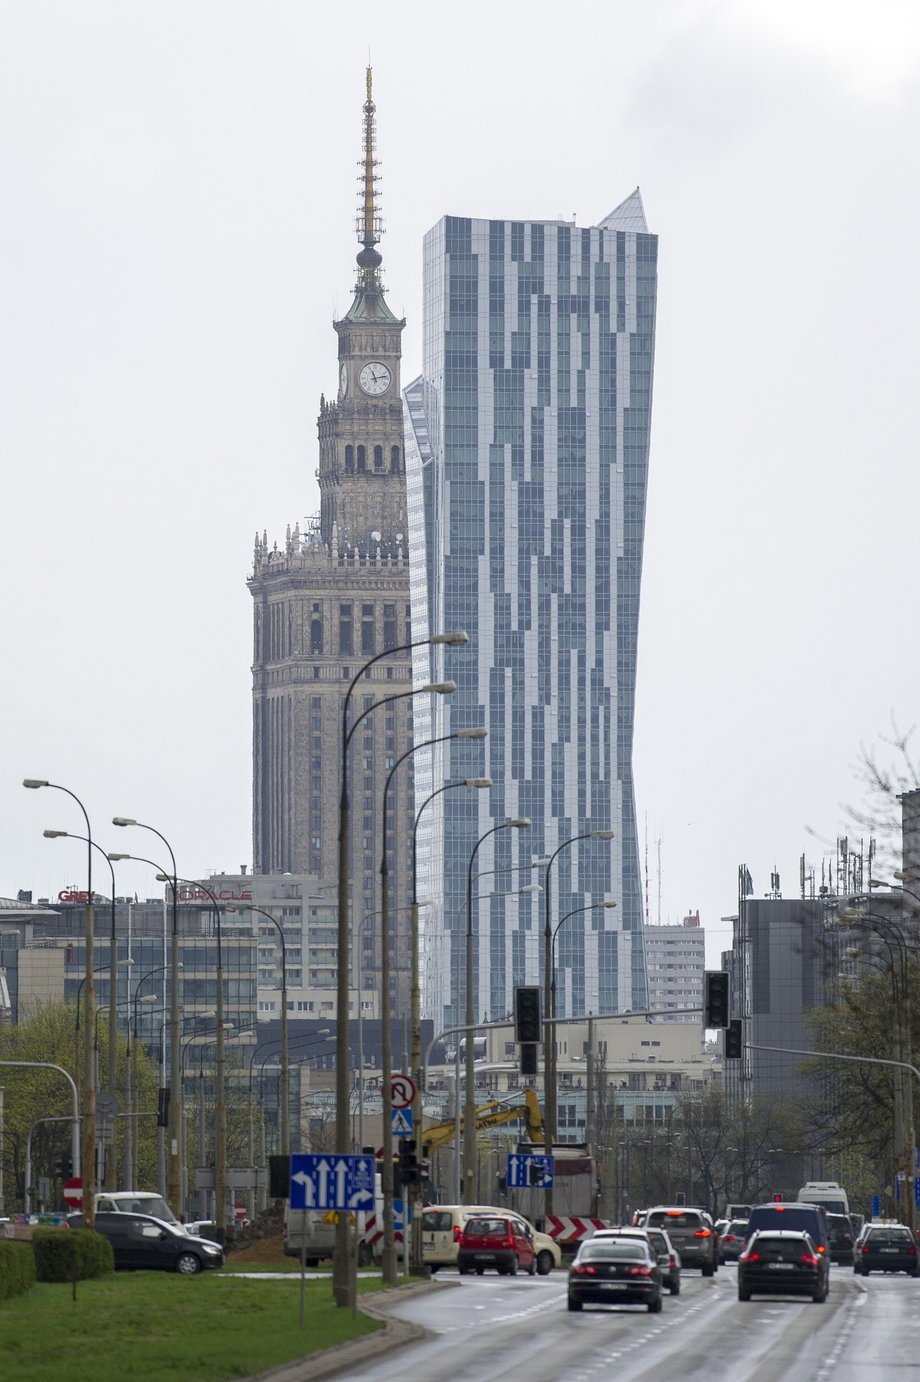 6. Apartamentowiec Złota 44 to jeden z najwyższych budynków mieszkalnych nie tylko w Polsce, lecz także w Unii Europejskiej. Jego wysokość toi 192 m.